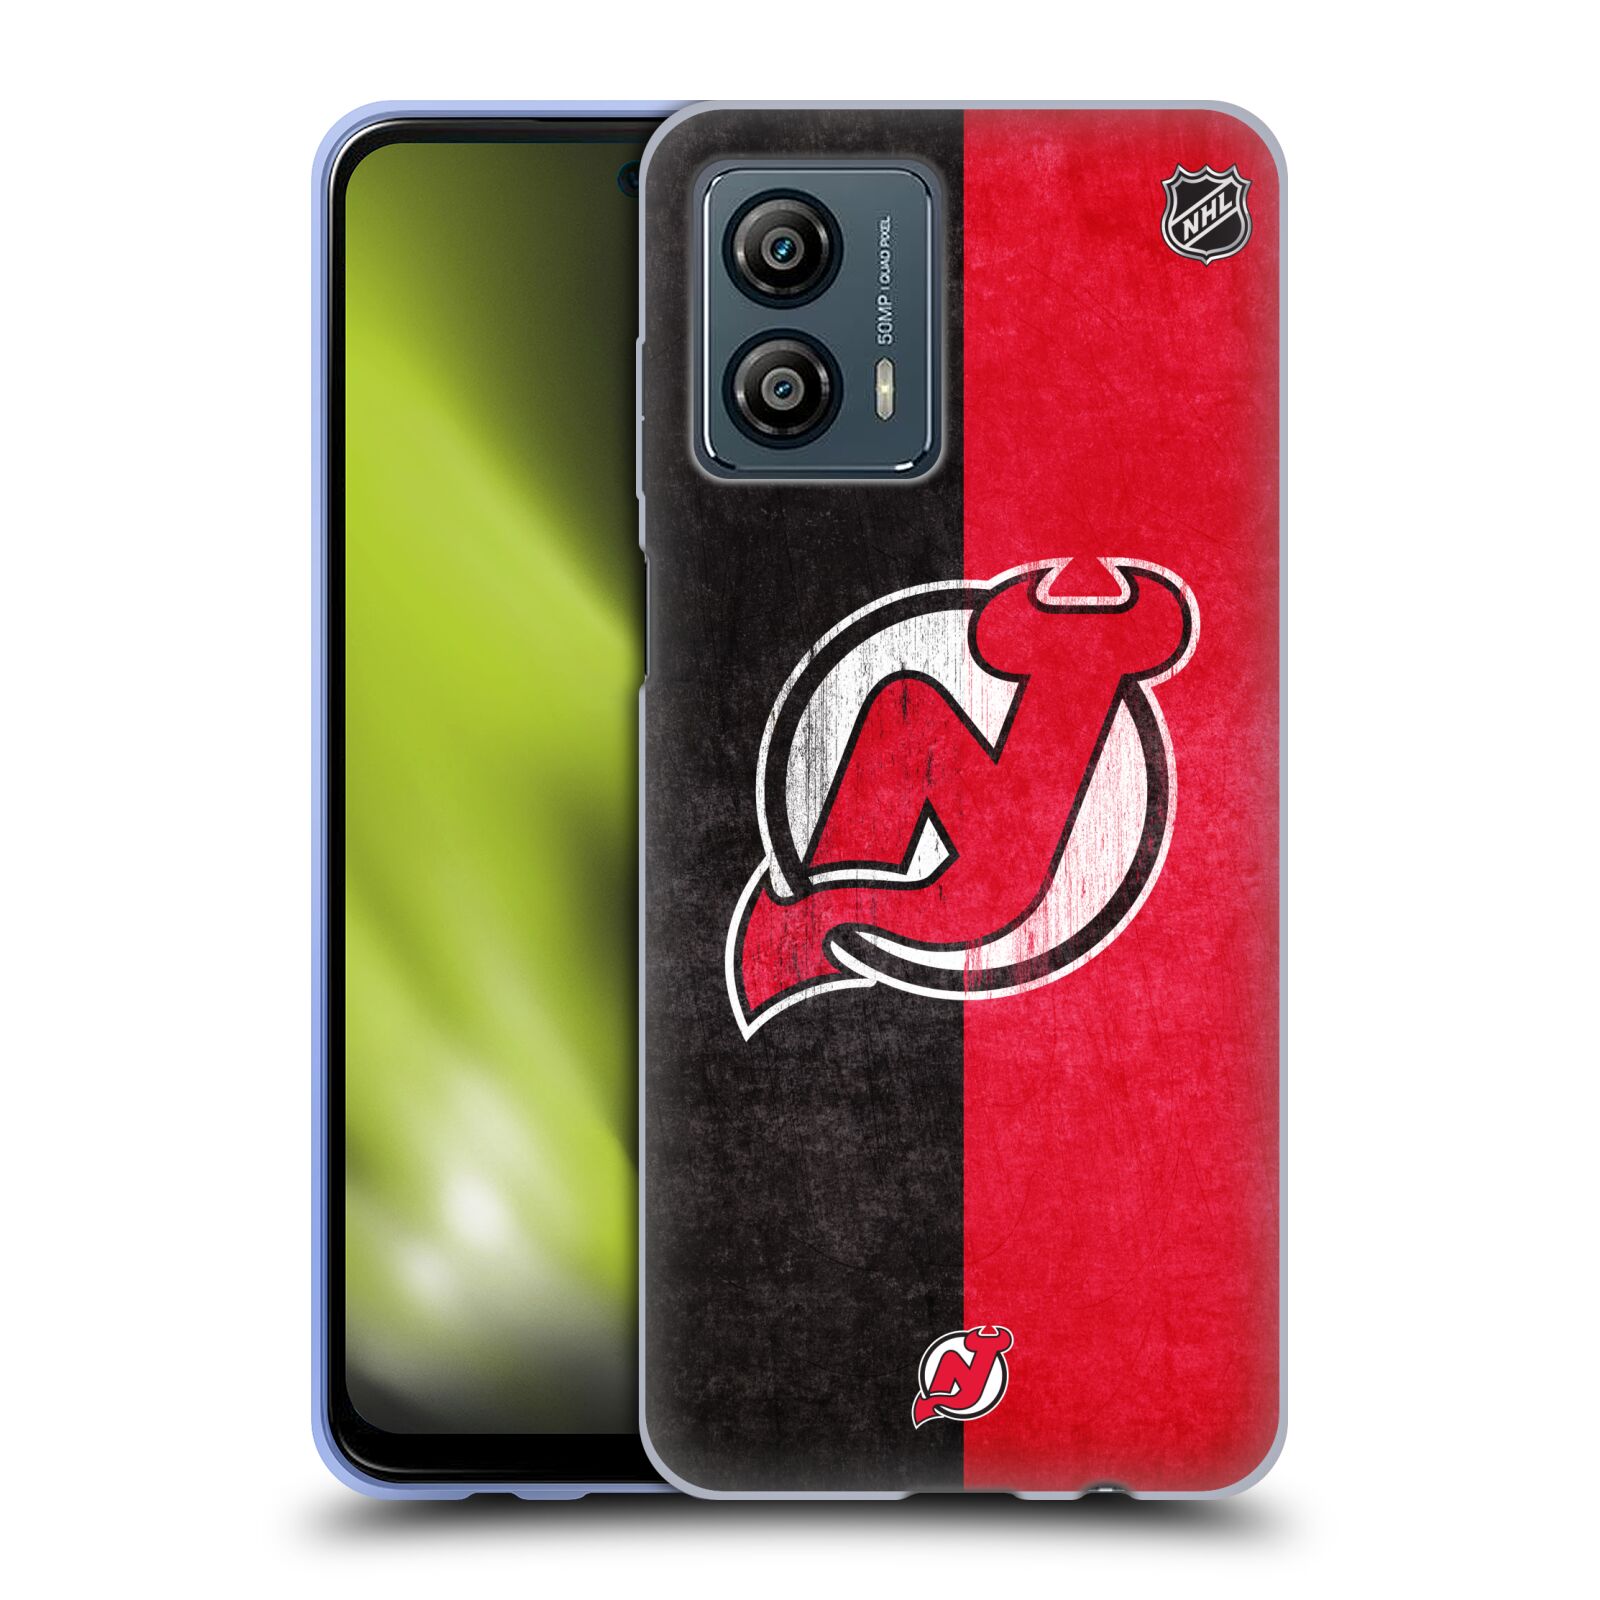 Silikonové pouzdro na mobil Motorola Moto G53 5G - NHL - Půlené logo New Jersey Devils (Silikonový kryt, obal, pouzdro na mobilní telefon Motorola Moto G53 5G s licencovaným motivem NHL - Půlené logo New Jersey Devils)